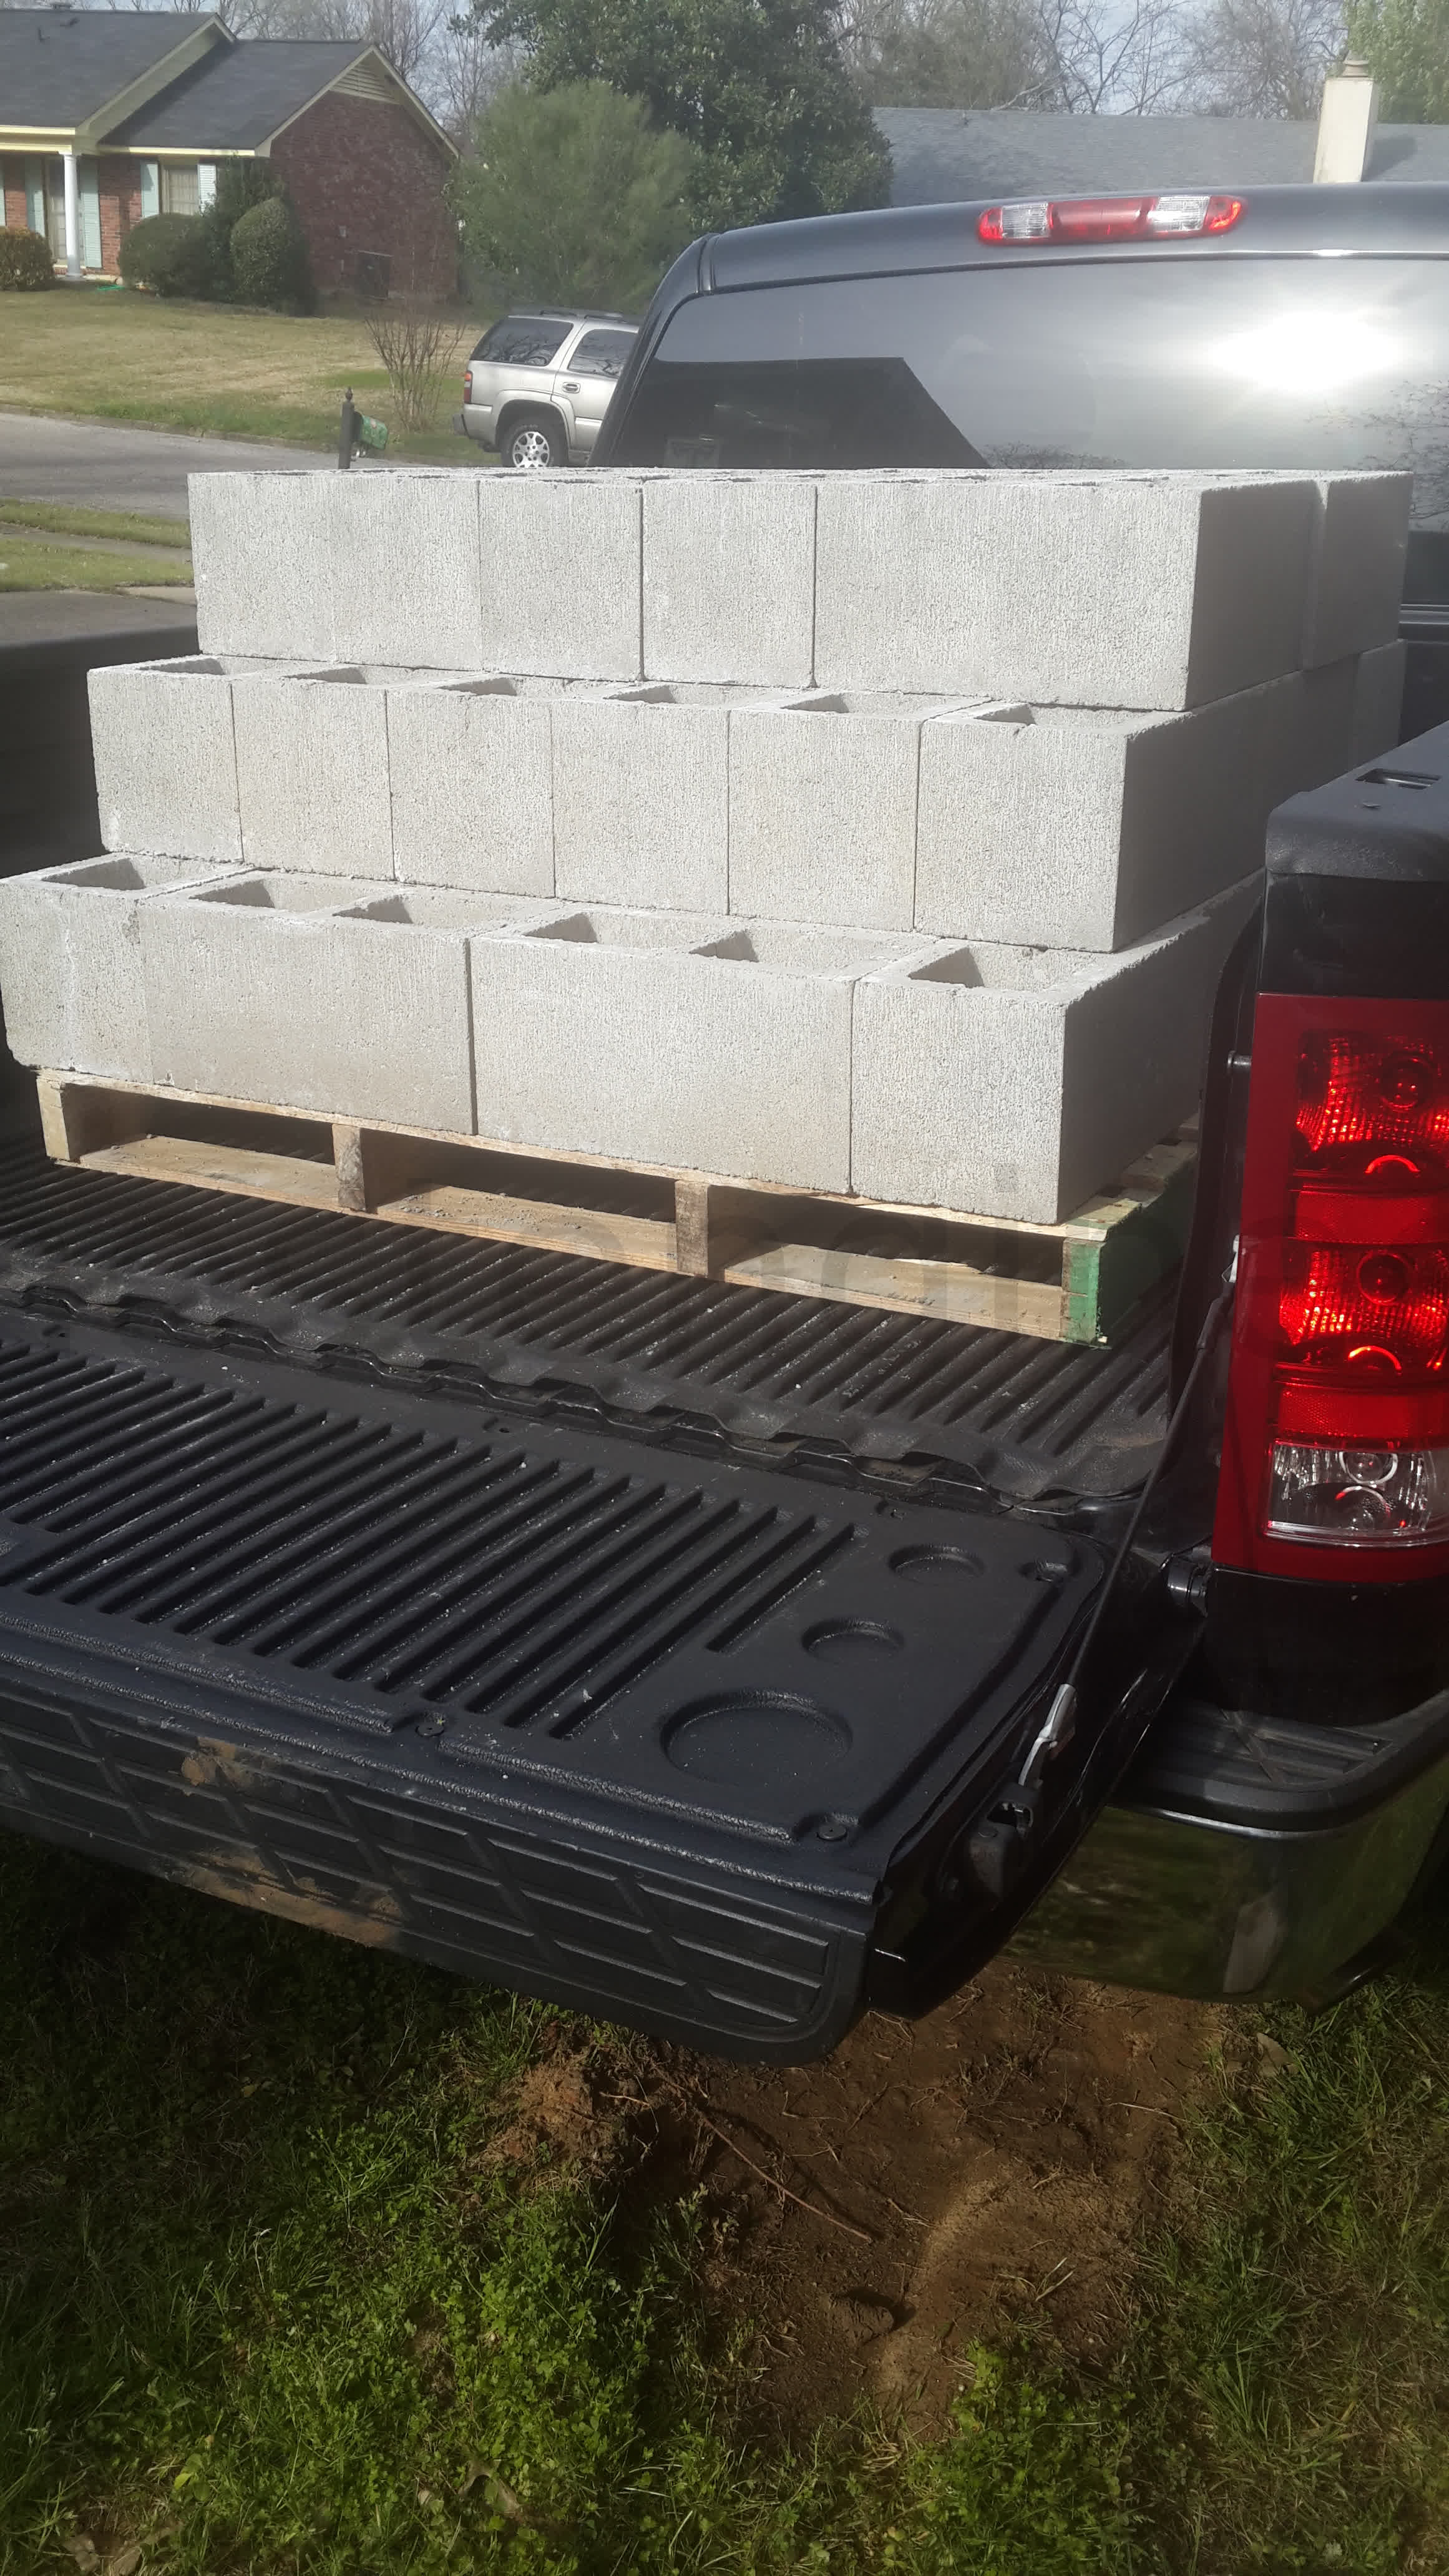 Truck bed full of concrete blocks